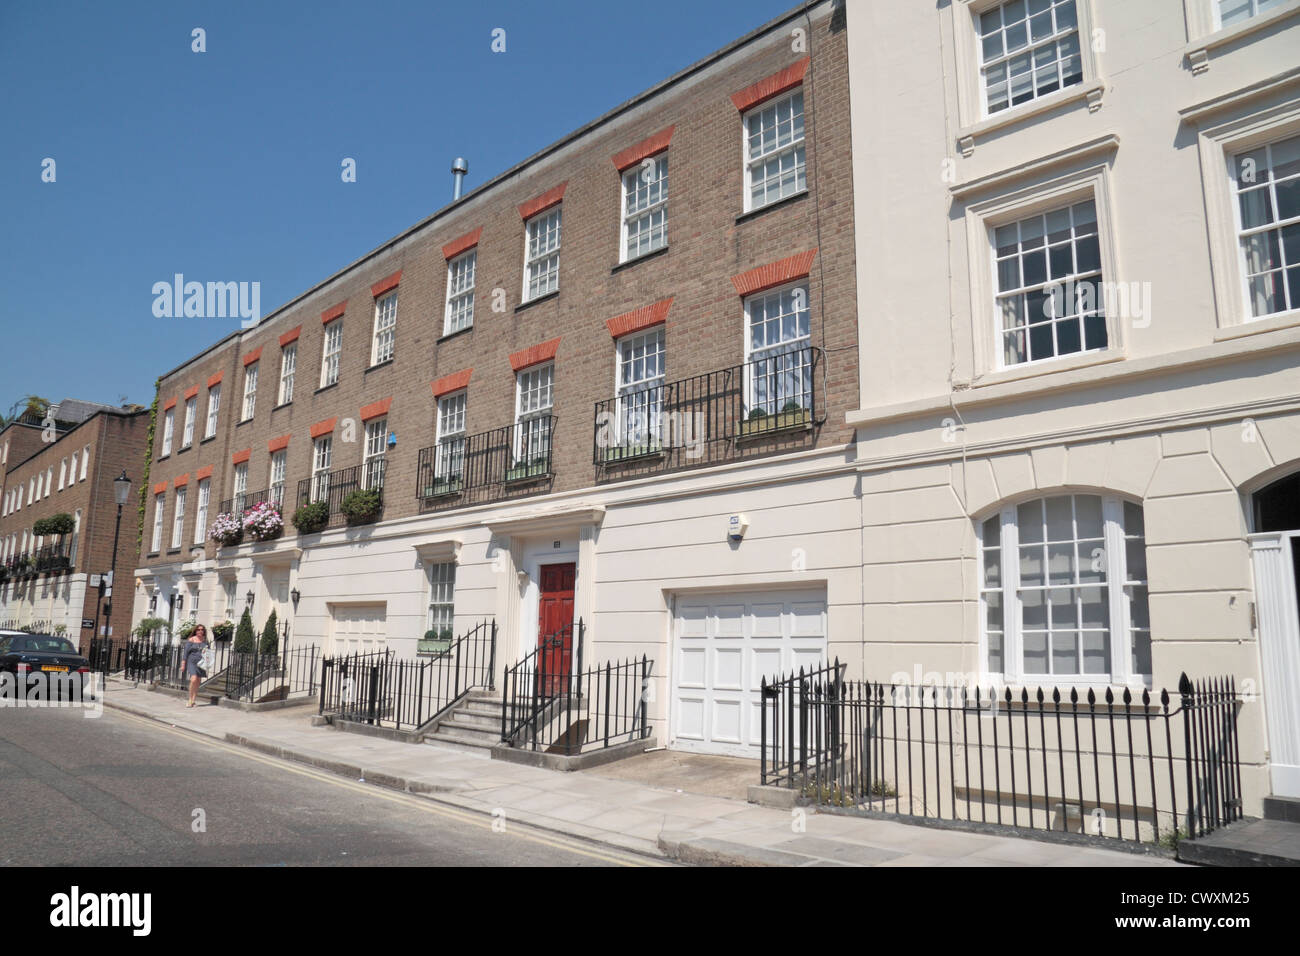 Vue d'une résidence sur la rue Bourne, Belgravia, City of Westminster, London, W1W, UK. Banque D'Images